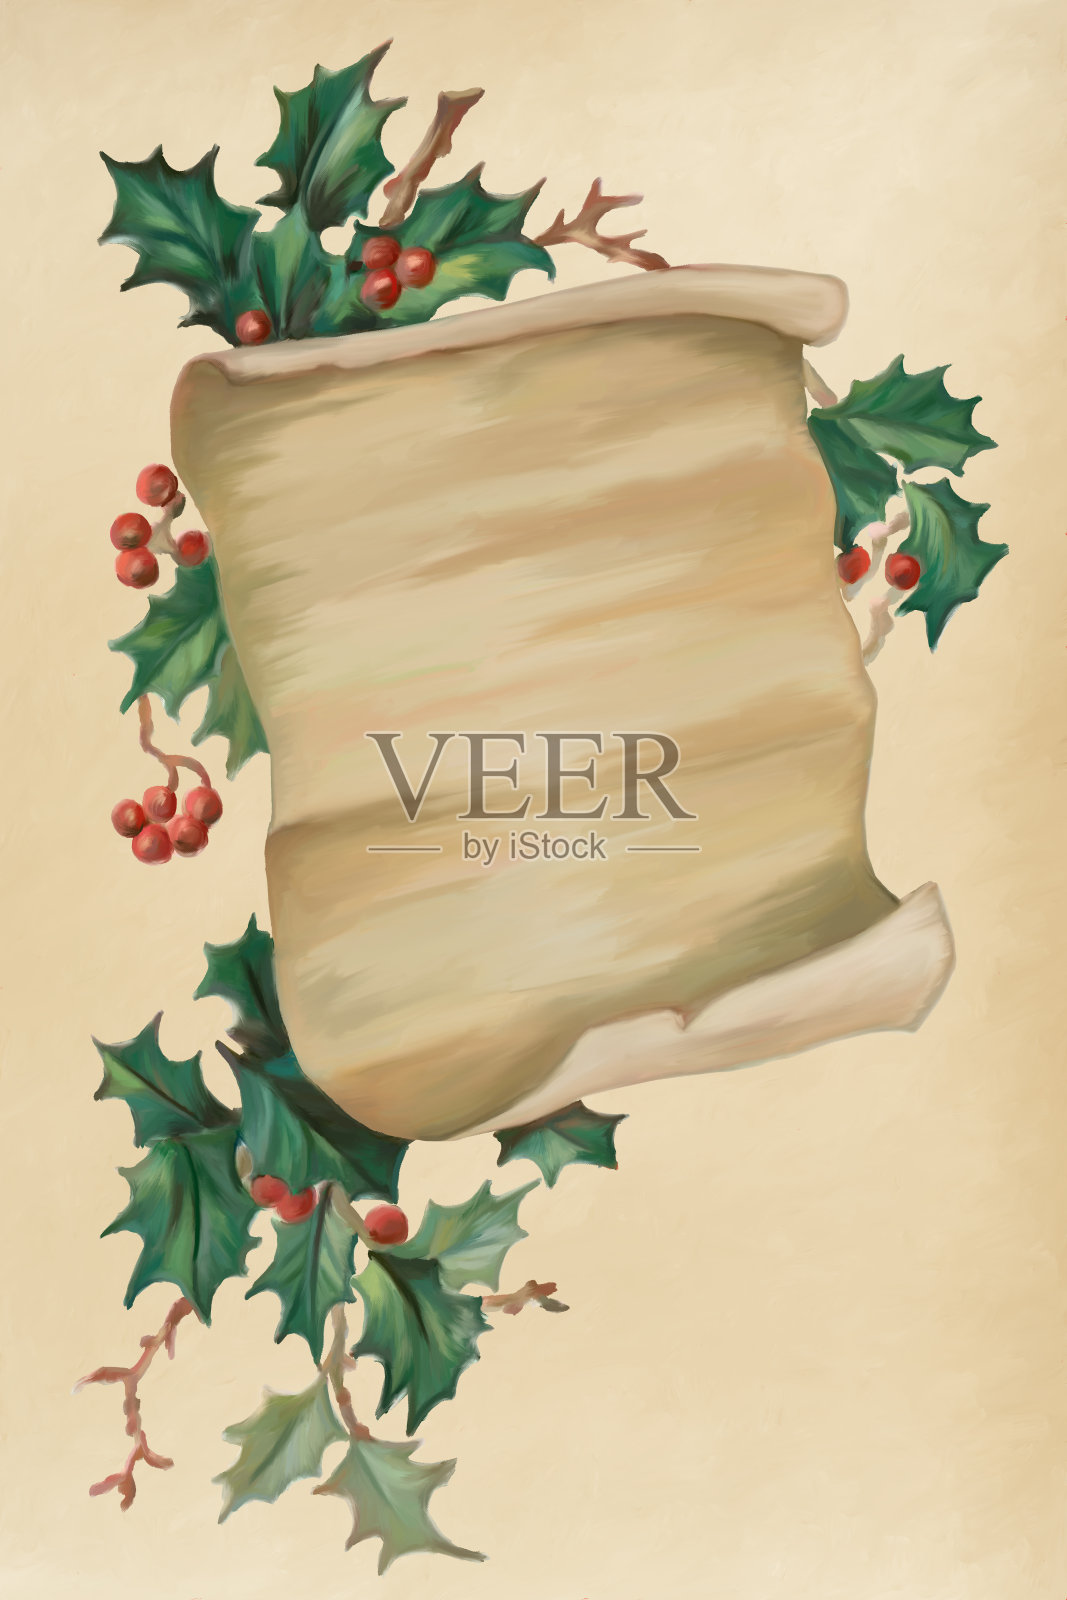 这是一幅以羊皮纸为背景，四周环绕着冬青浆果树枝的古董圣诞主题画插画图片素材